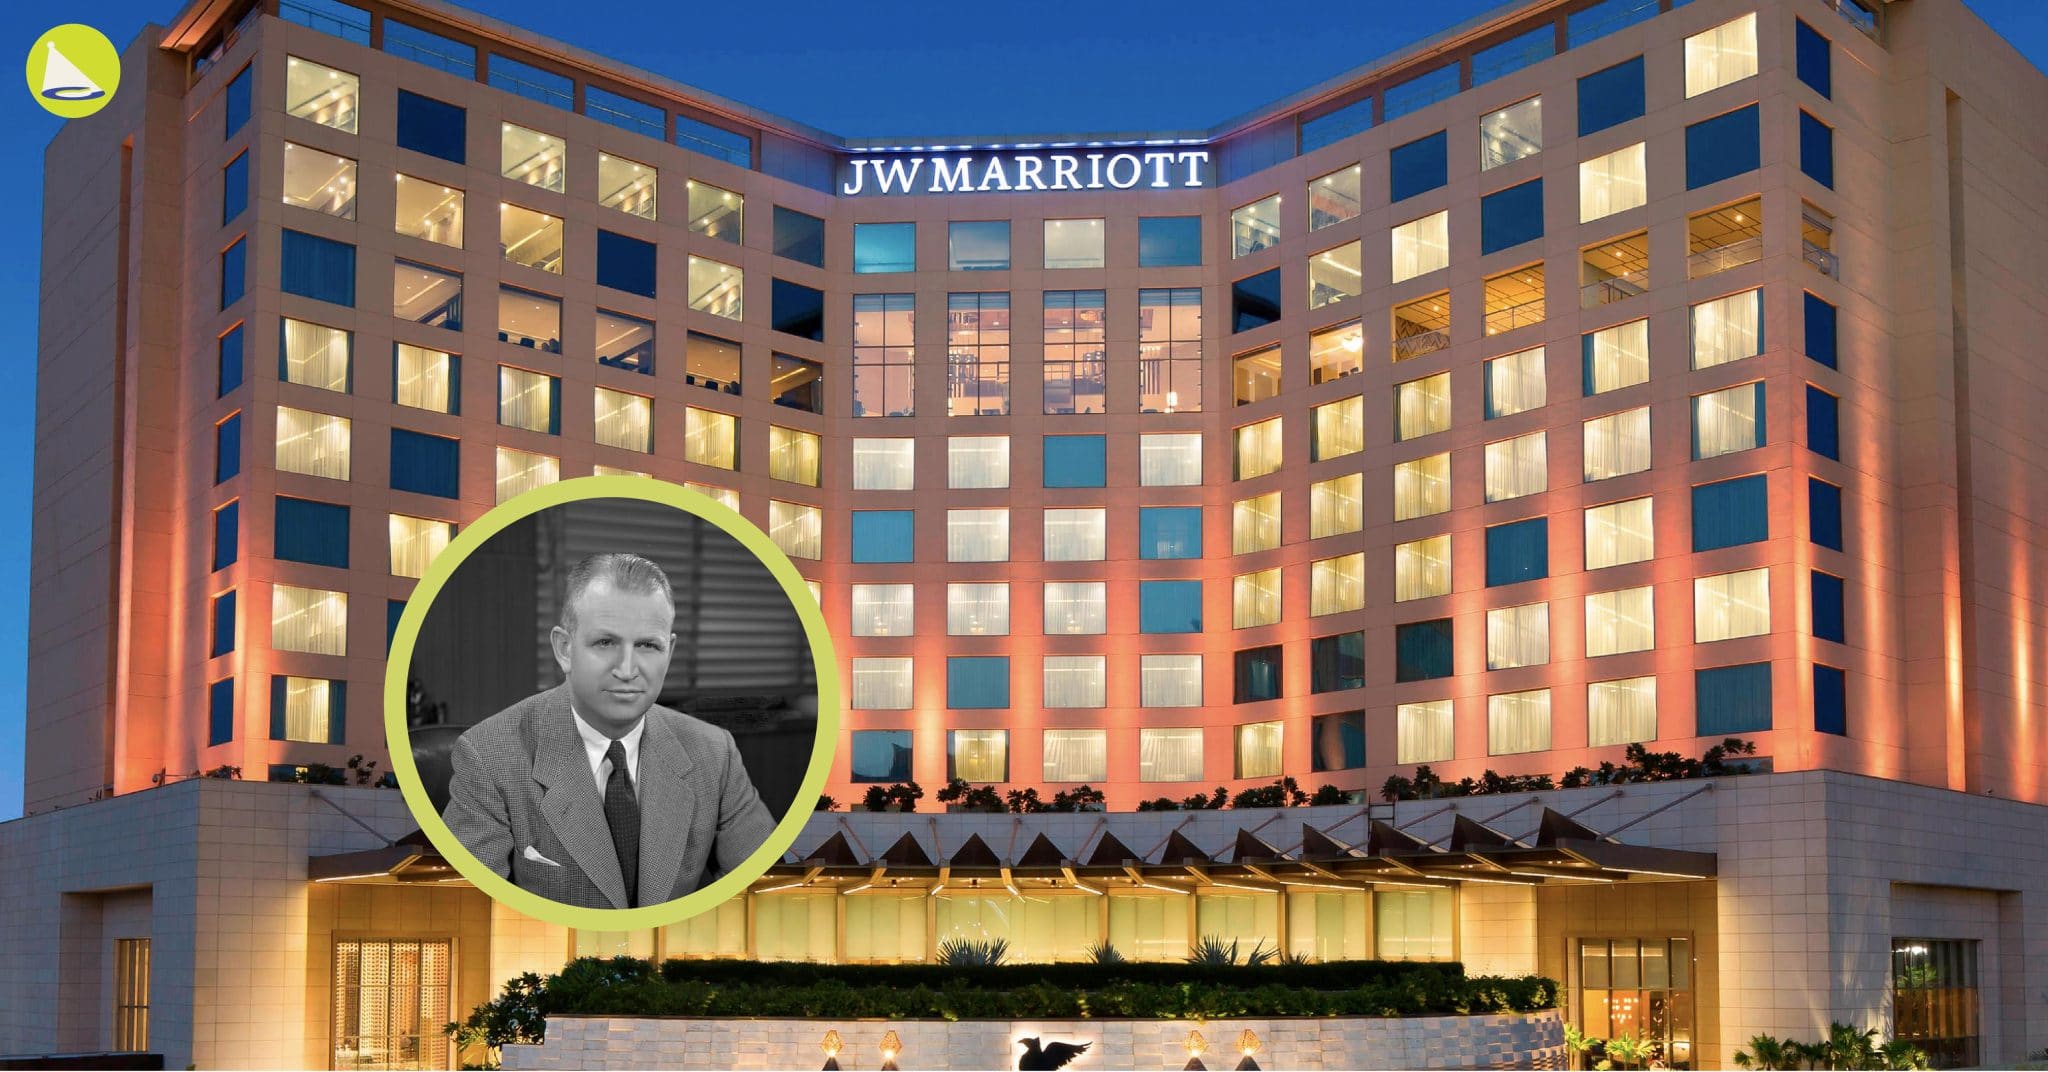 J.W. Marriott: จากเด็กเลี้ยงแกะสู่เจ้าของเครือโรงแรมที่ใหญ่ที่สุดในโลก